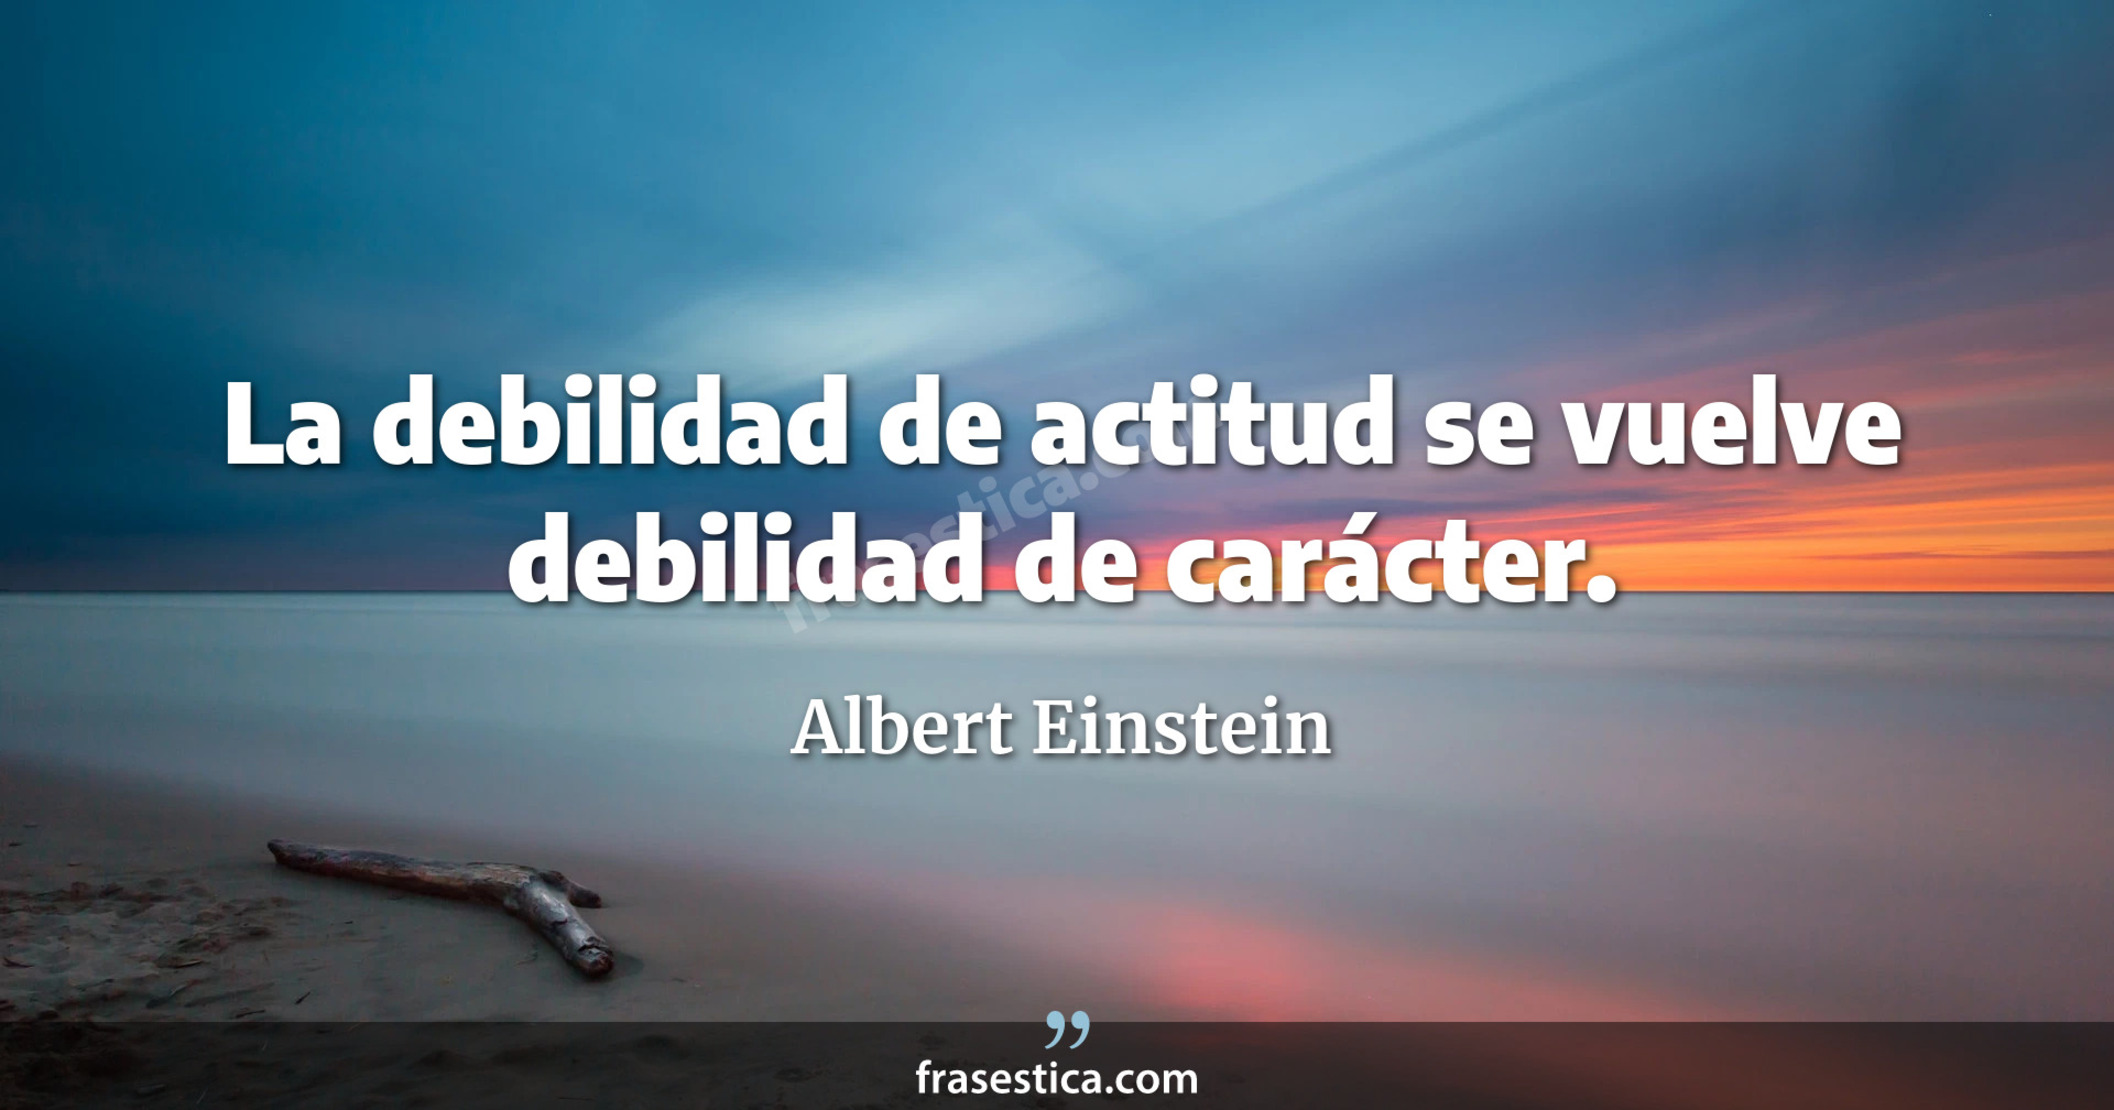 La debilidad de actitud se vuelve debilidad de carácter. - Albert Einstein